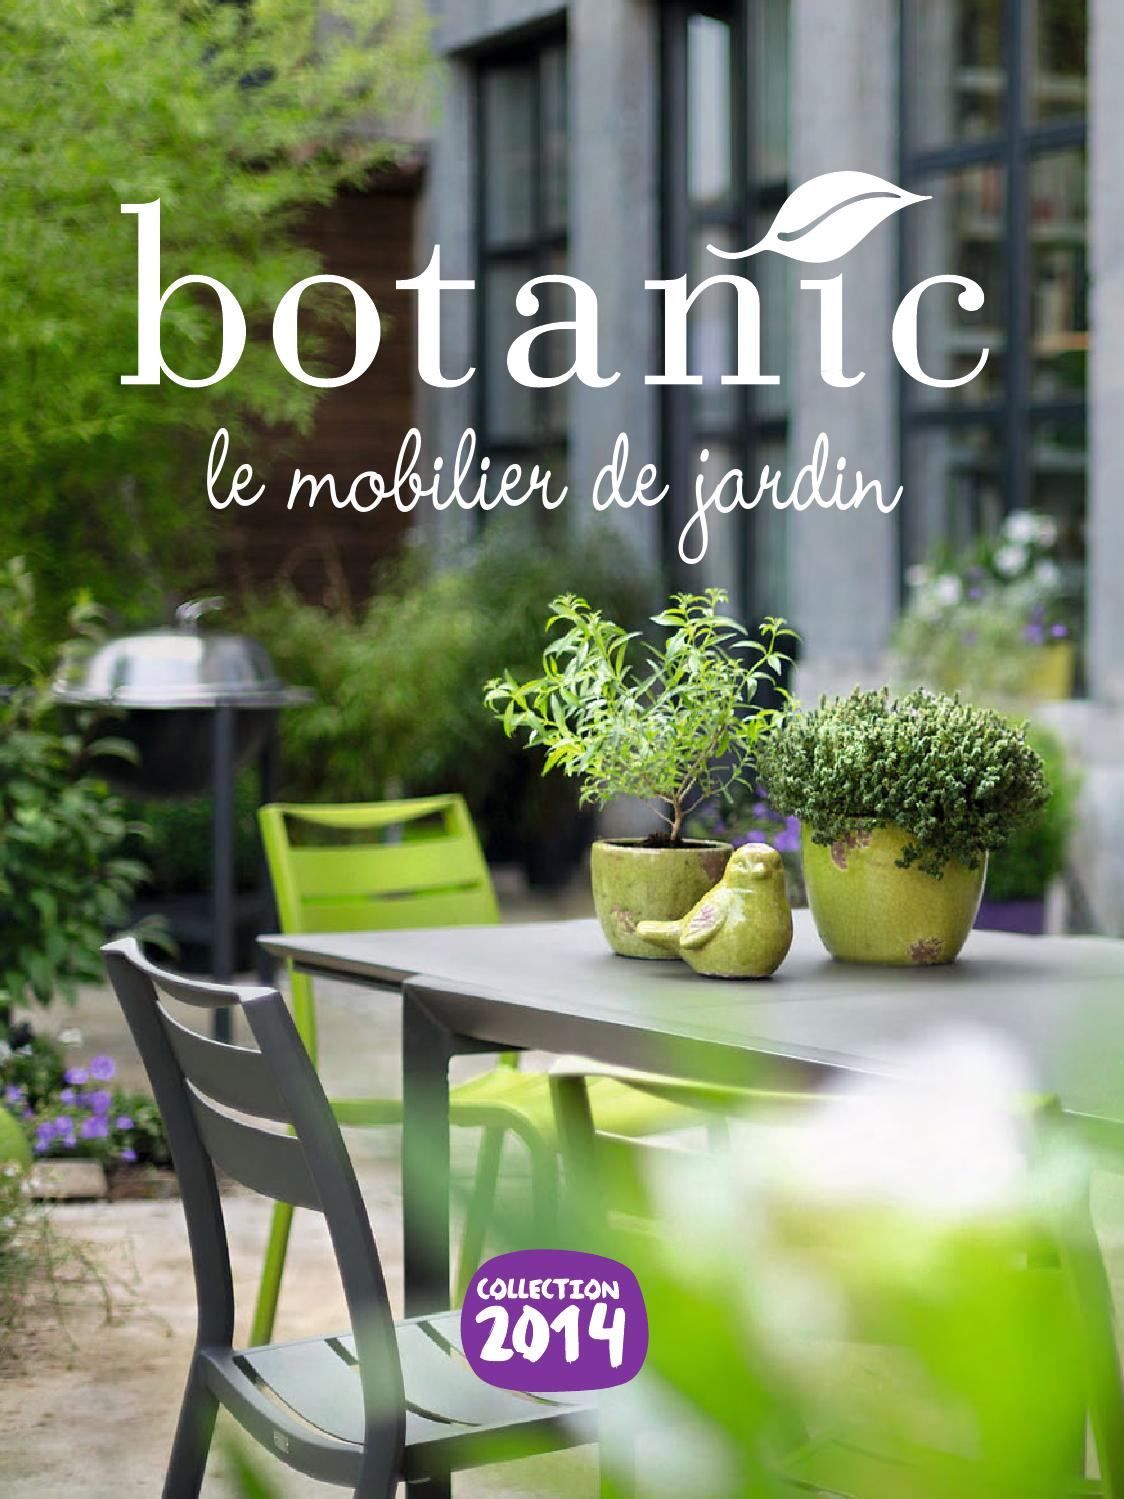 Catalogue Botanic - Le Mobilier De Jardin 2014 By Joe Monroe ... concernant Botanic Meubles De Jardin